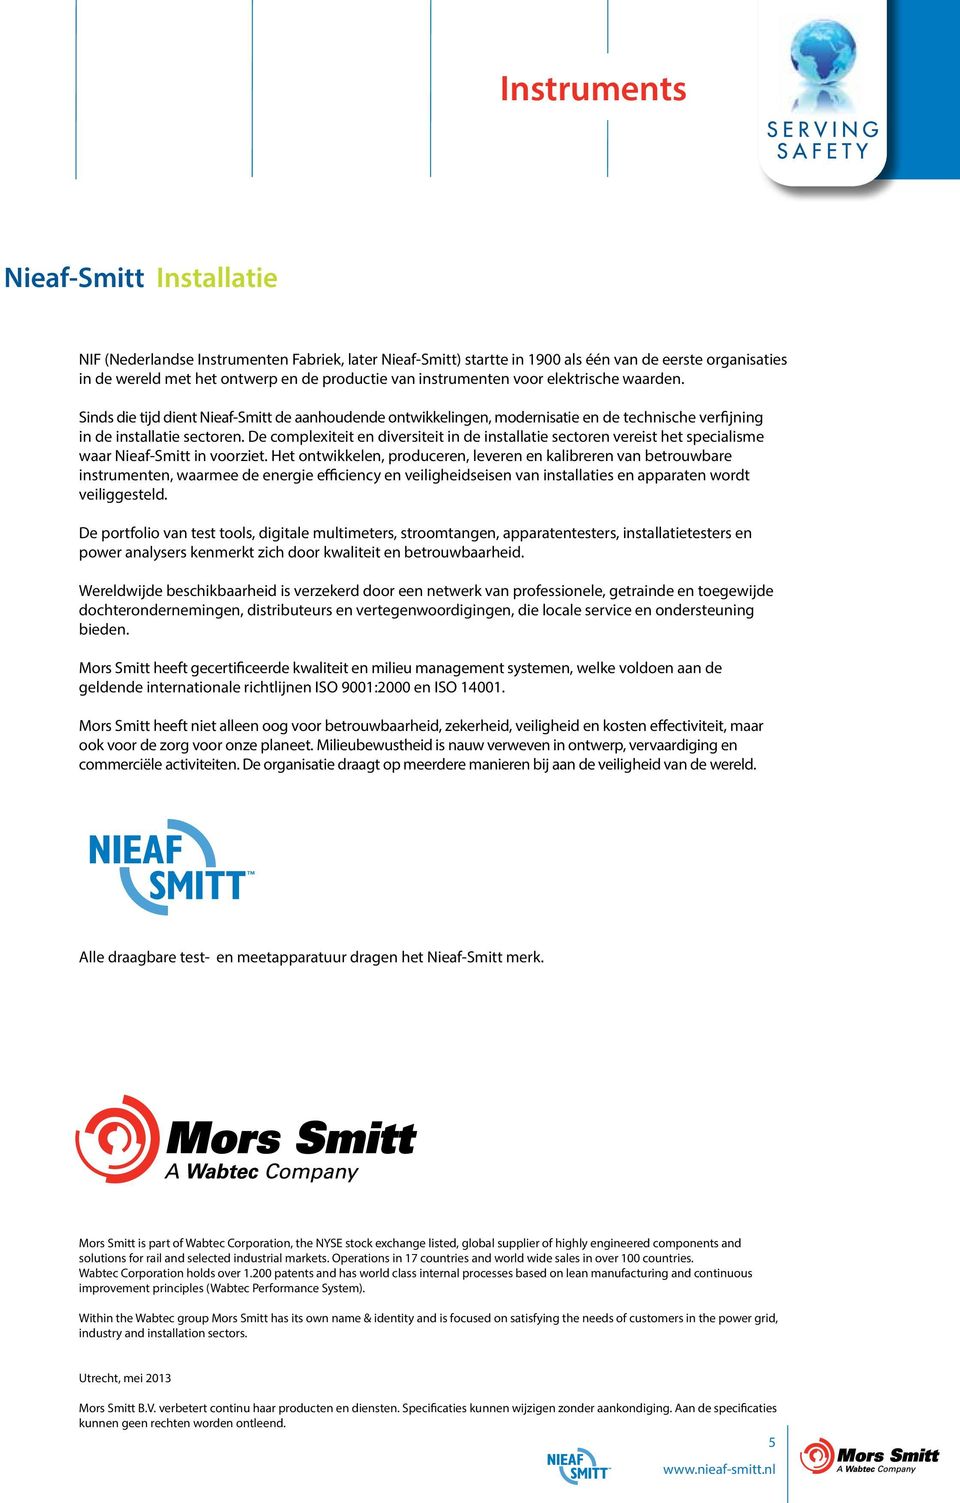 De complexiteit en diversiteit in de installatie sectoren vereist het specialisme waar Nieaf-Smitt in voorziet.